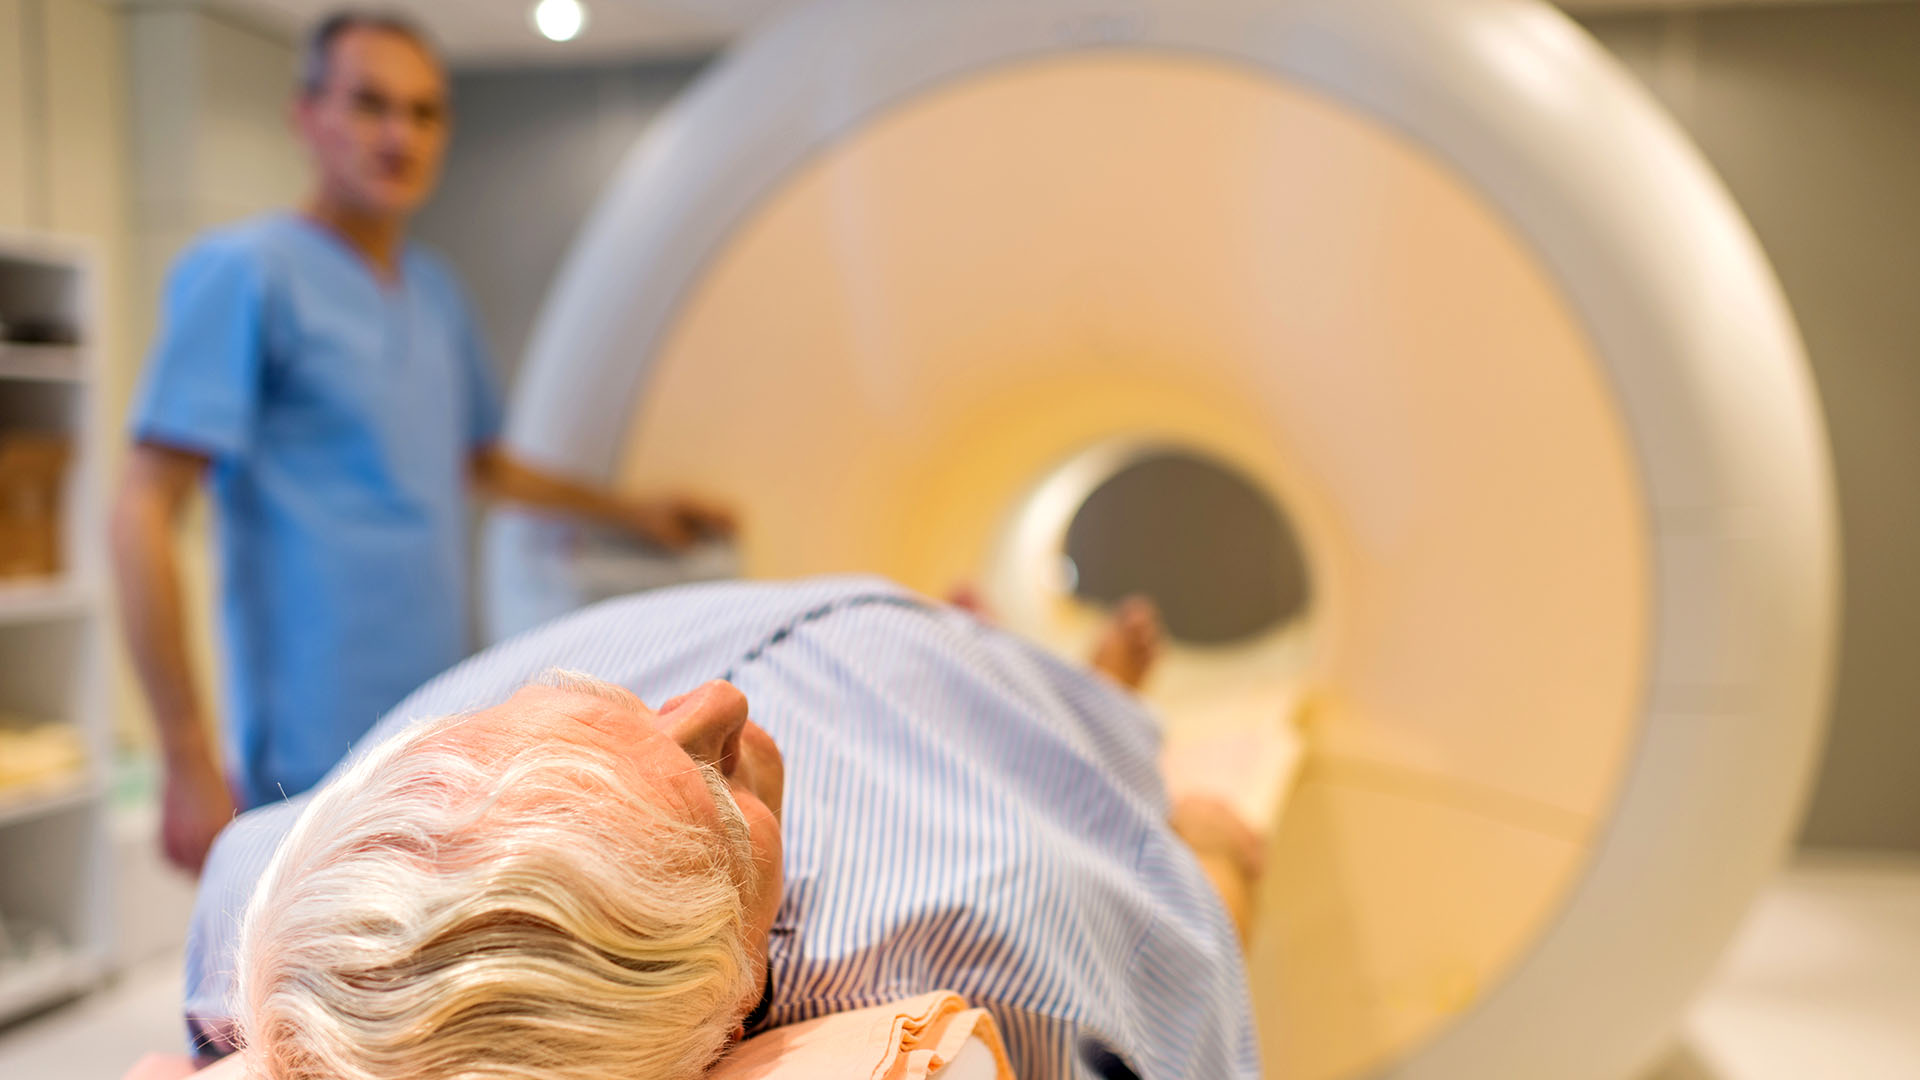 La Resonancia magnética antes de una biopsia en un paciente con sospecha de cáncer ha reducido la detección de cánceres de bajo nivel de agresividad en un 50%  (Getty)